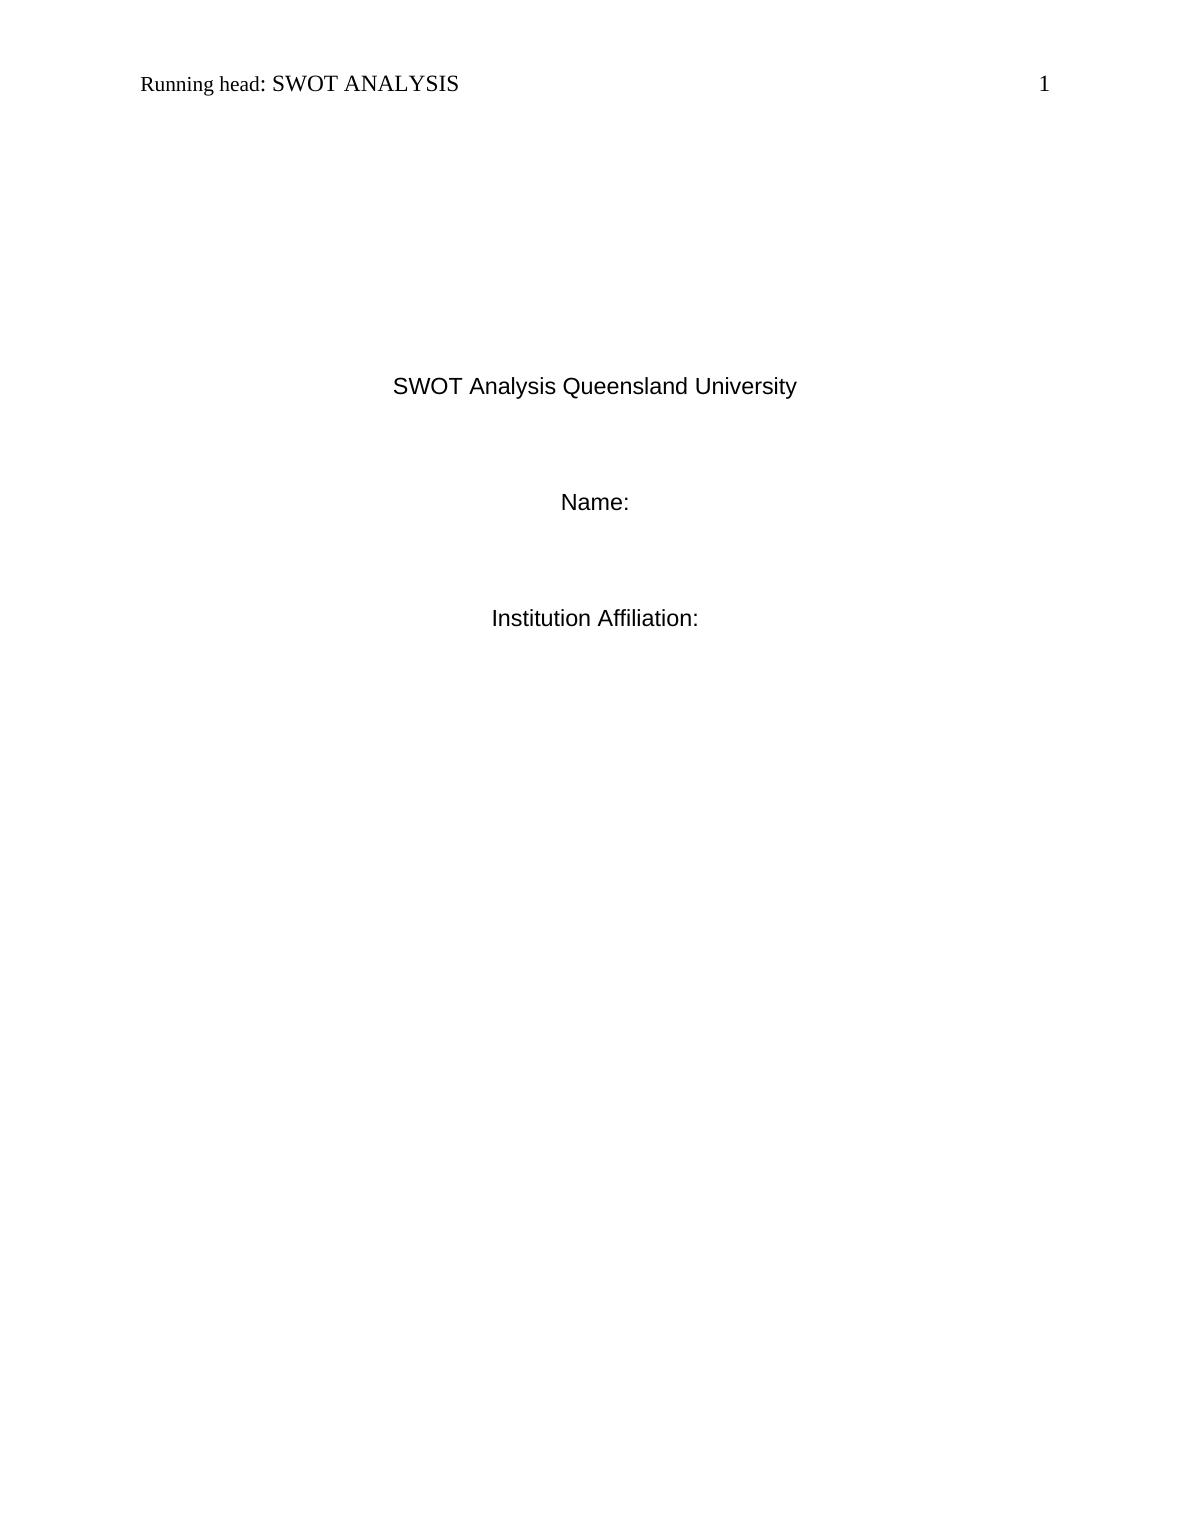 SWOT Analysis of Queensland University_1